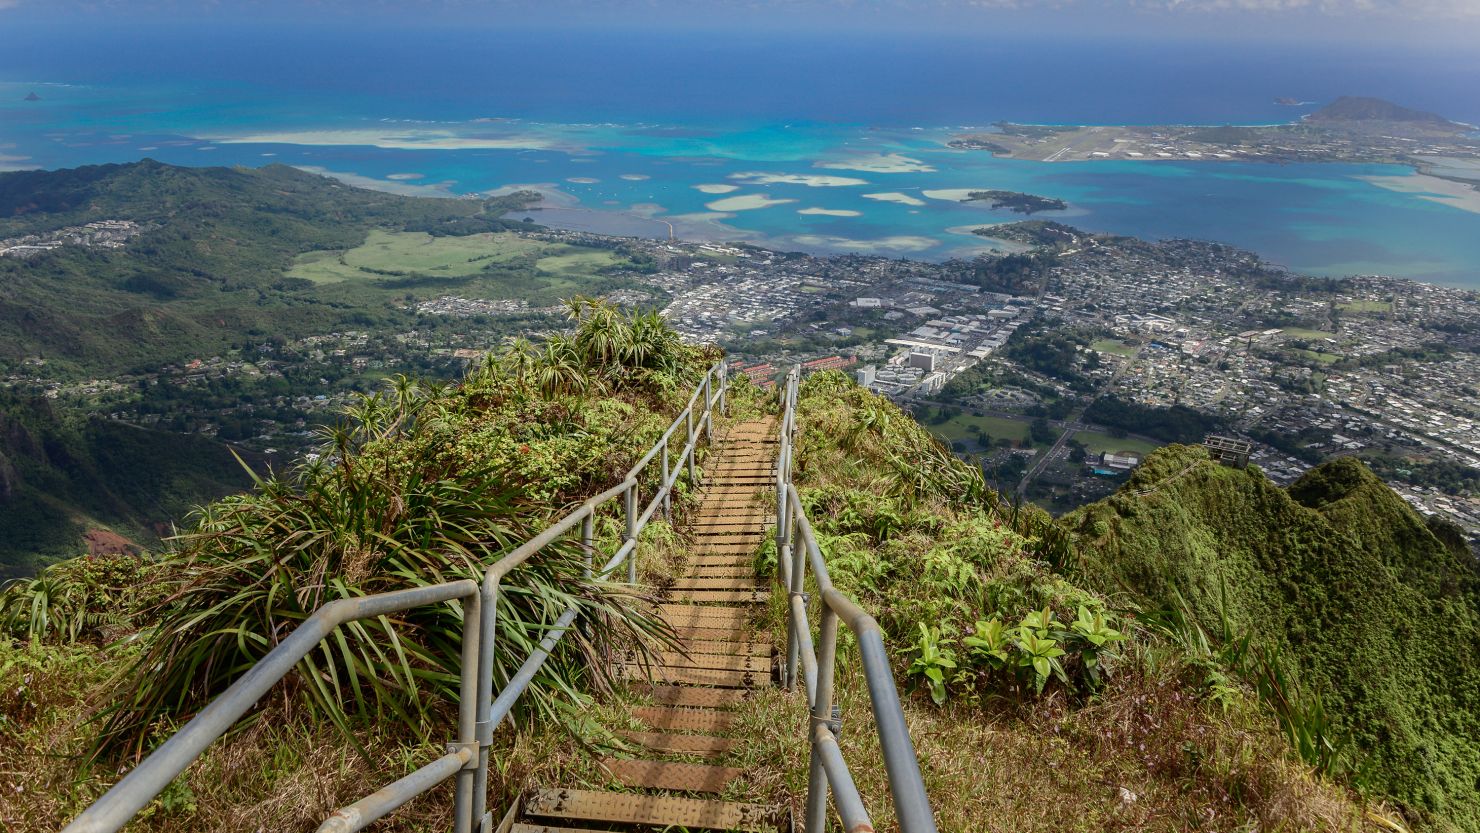 The Haiku Stairs on the eastern side of Oahu island.